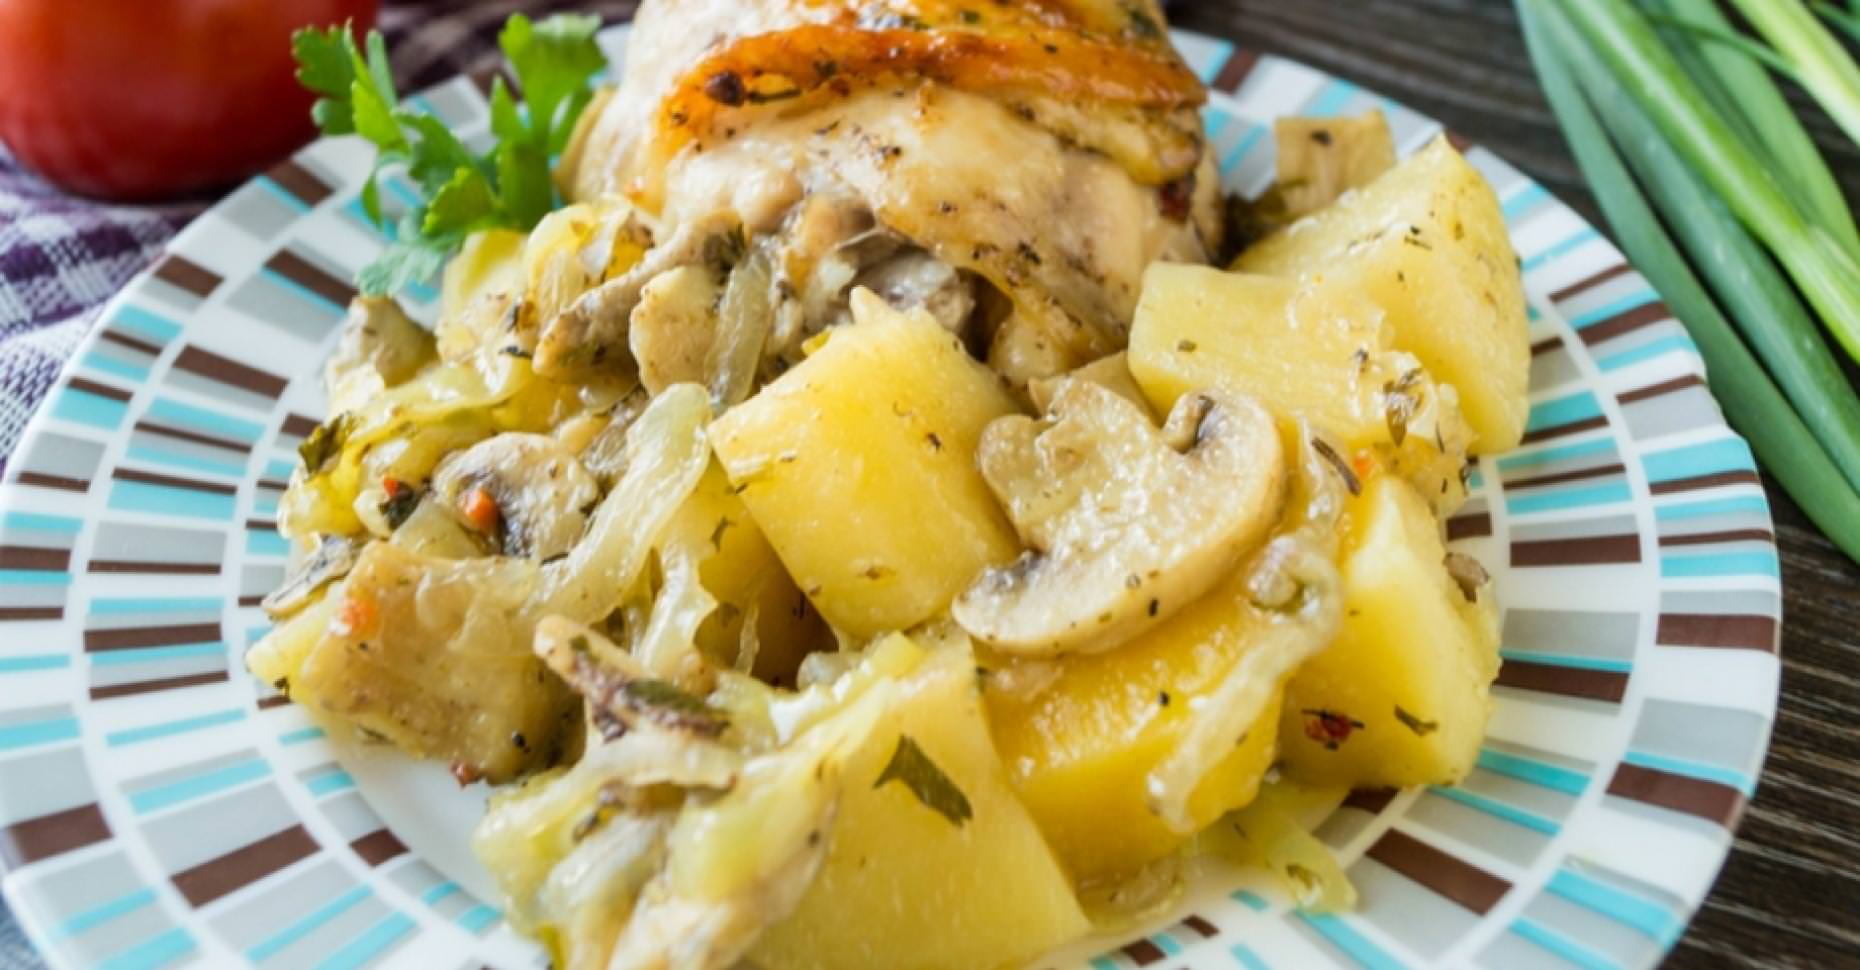 Запеченная картошка с мясом и грибами. Курица с картошкой. Курица с картошкой и грибами в духовке. Шампиньоны с картошкой и курицей. Курица с картошкой и шампиньонами в духовке.